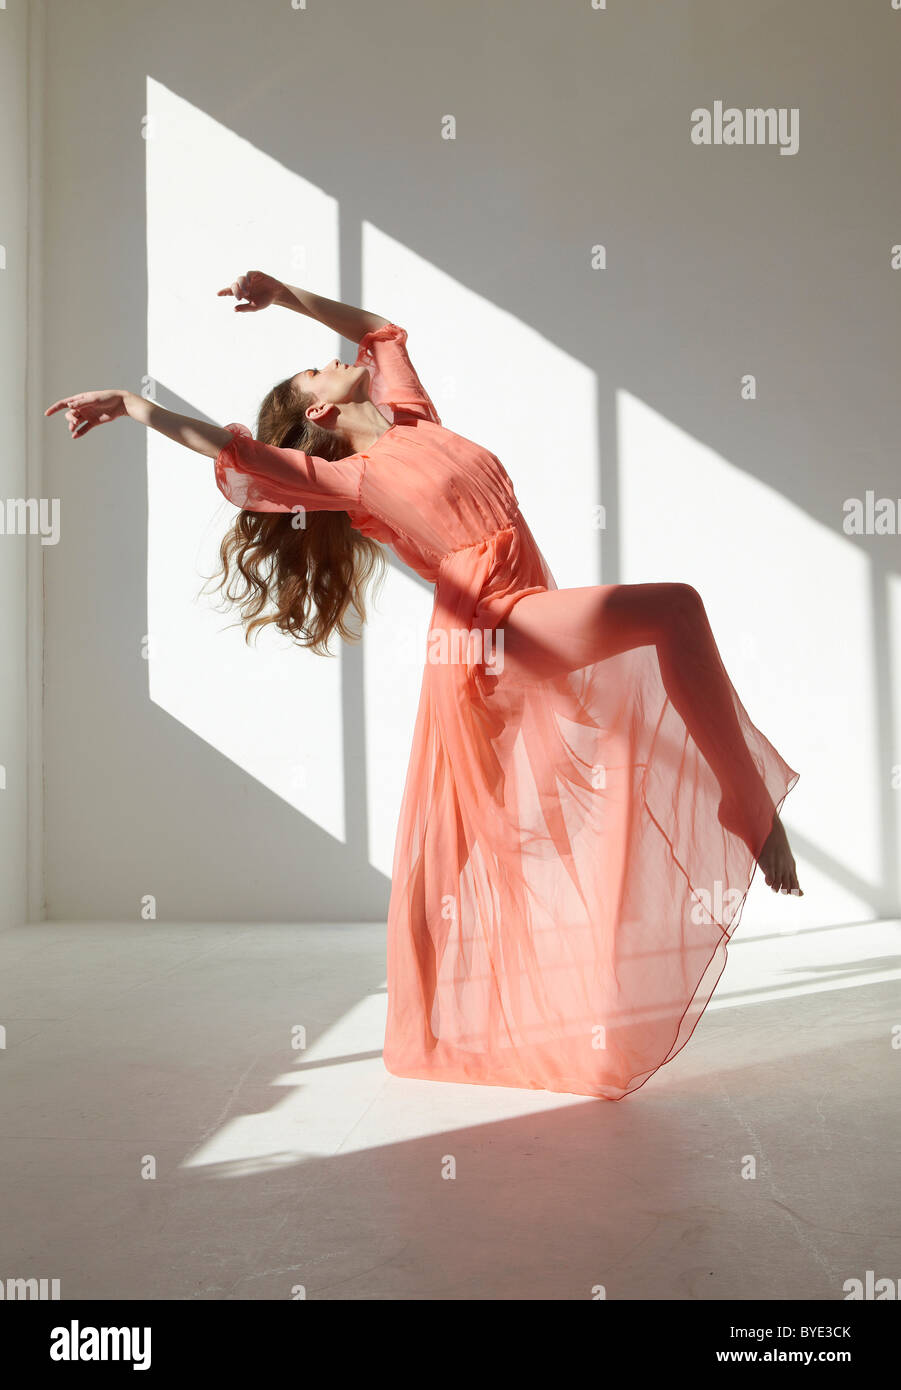 Ballett-Tänzerin trägt ein rotes Kleid in einer Tanz-pose Stockfoto